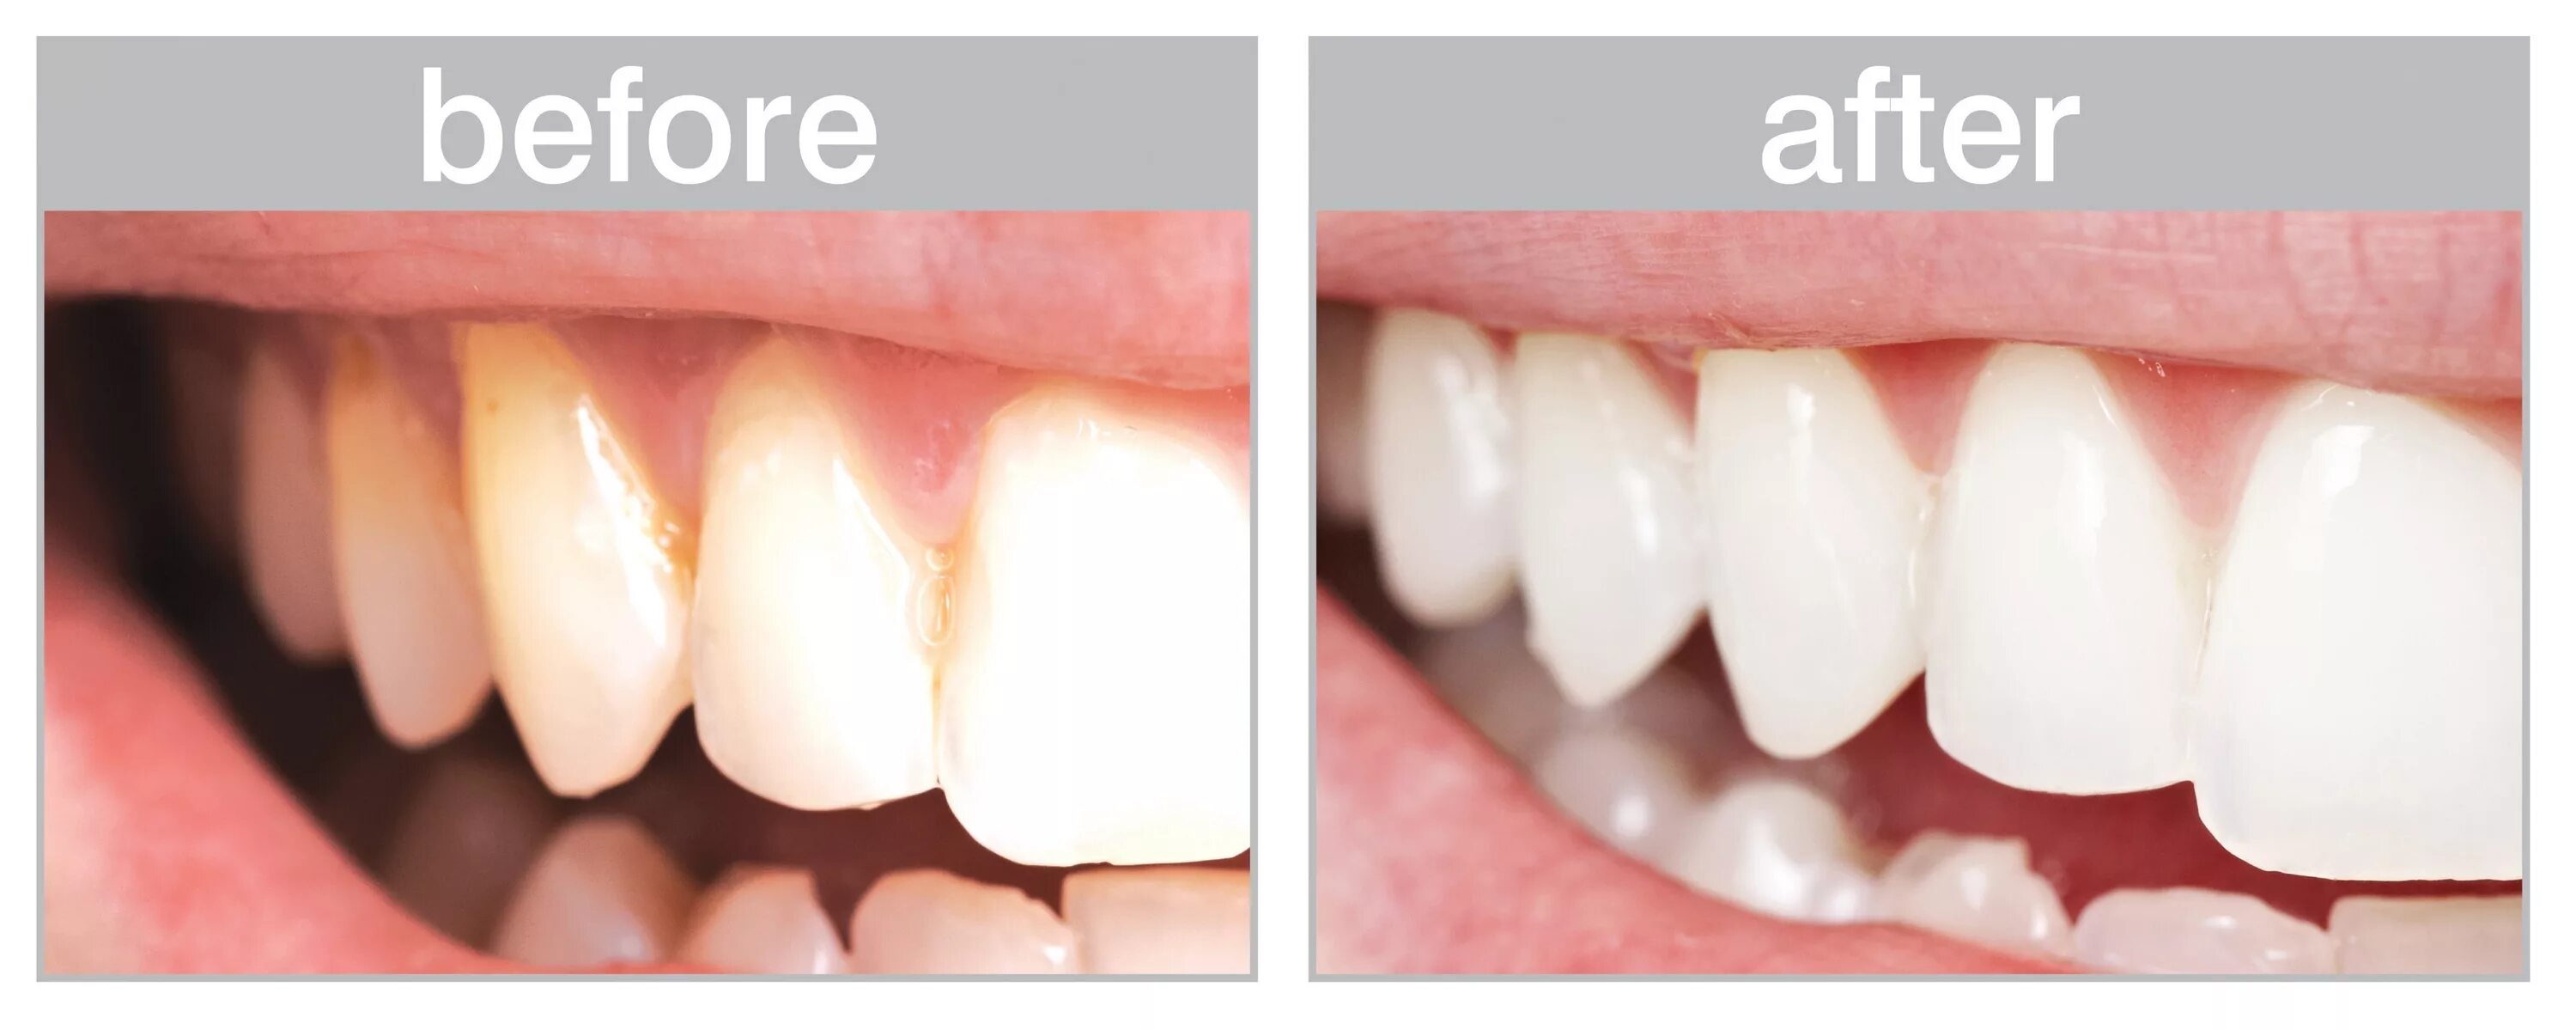 После чистки зубов можно ли пить чай. Шлифовка зубов до и после. Чистка зубов АИР флоу до и после.